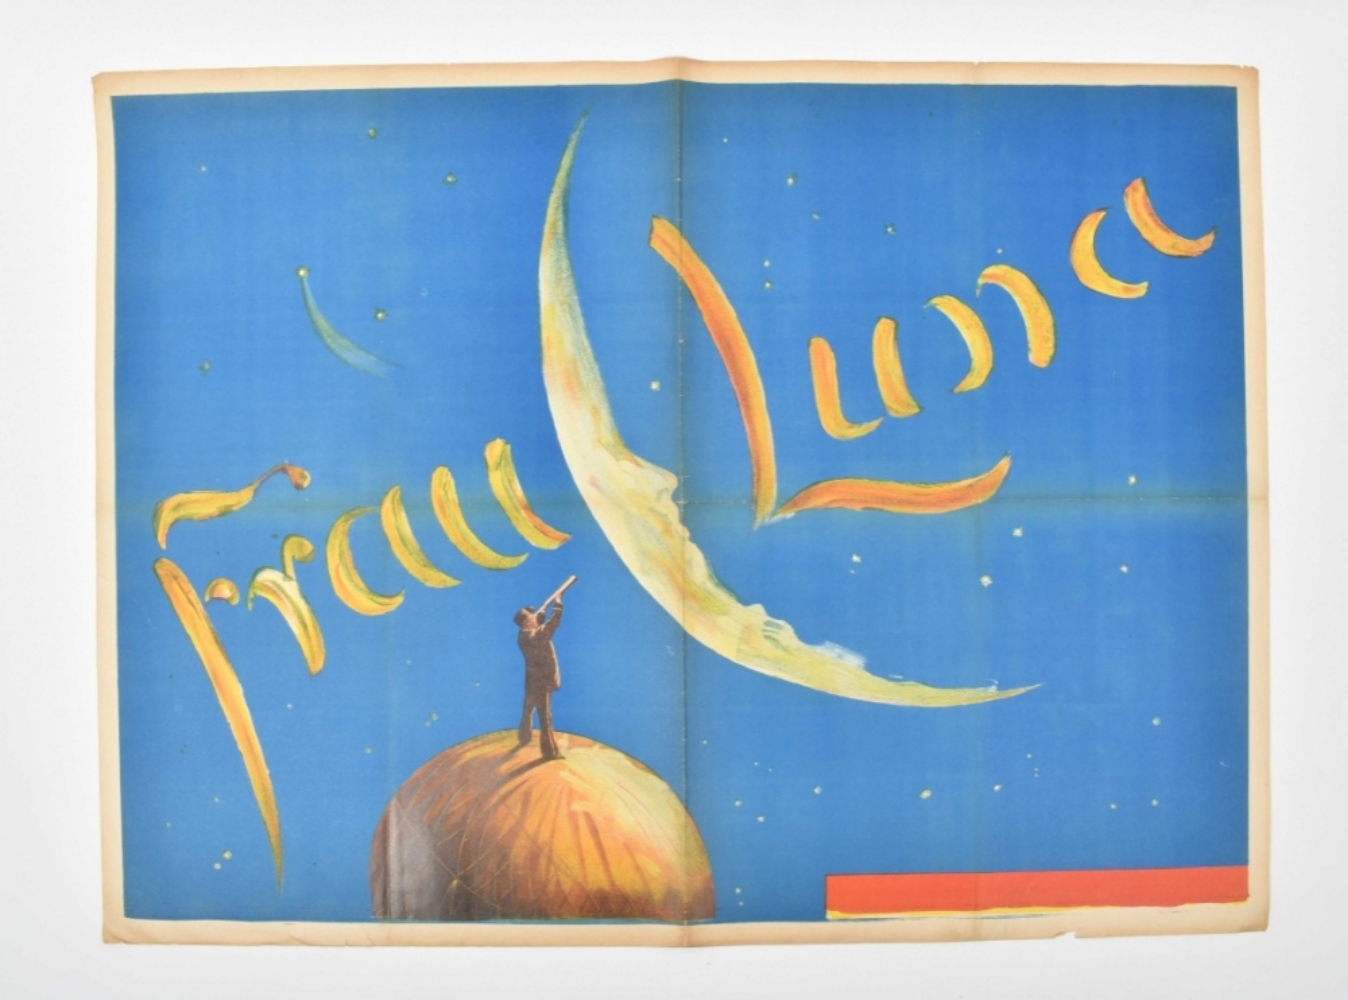 [Hot air balloon] M. Rabes (1868-1944). Frau Luna, Apollo-Theatre - Image 7 of 9